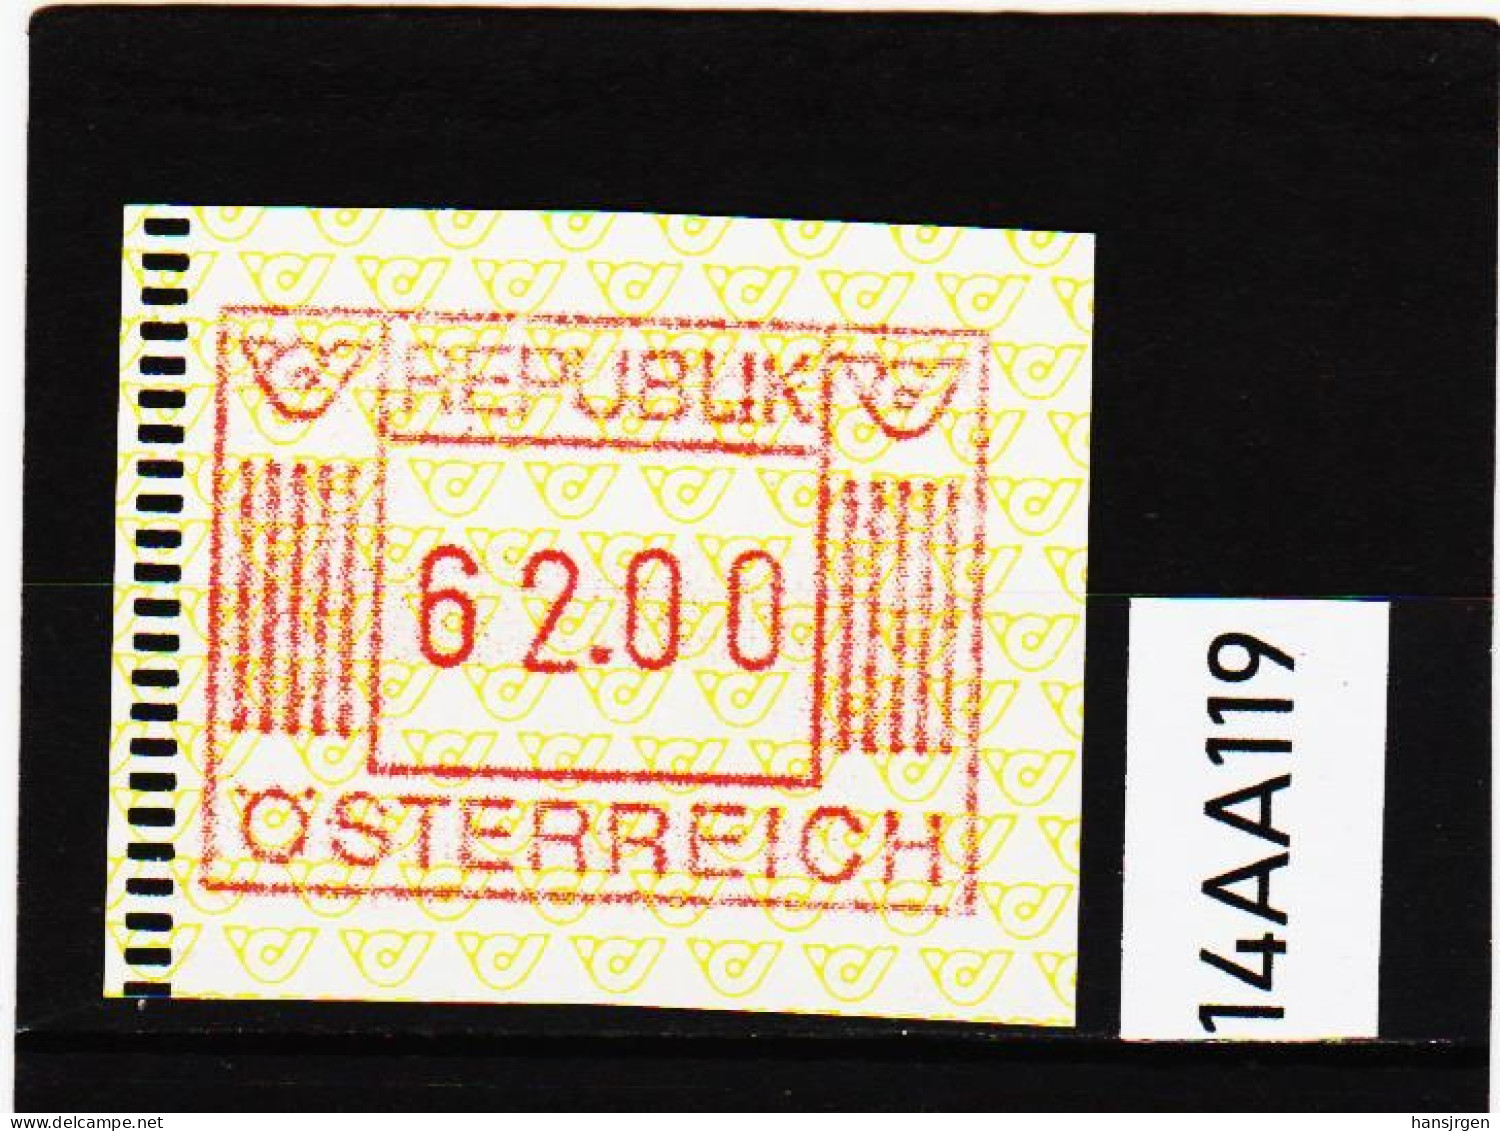 14AA/119  ÖSTERREICH 1983 AUTOMATENMARKEN  A N K  1. AUSGABE  62,00 SCHILLING   ** Postfrisch - Machine Labels [ATM]